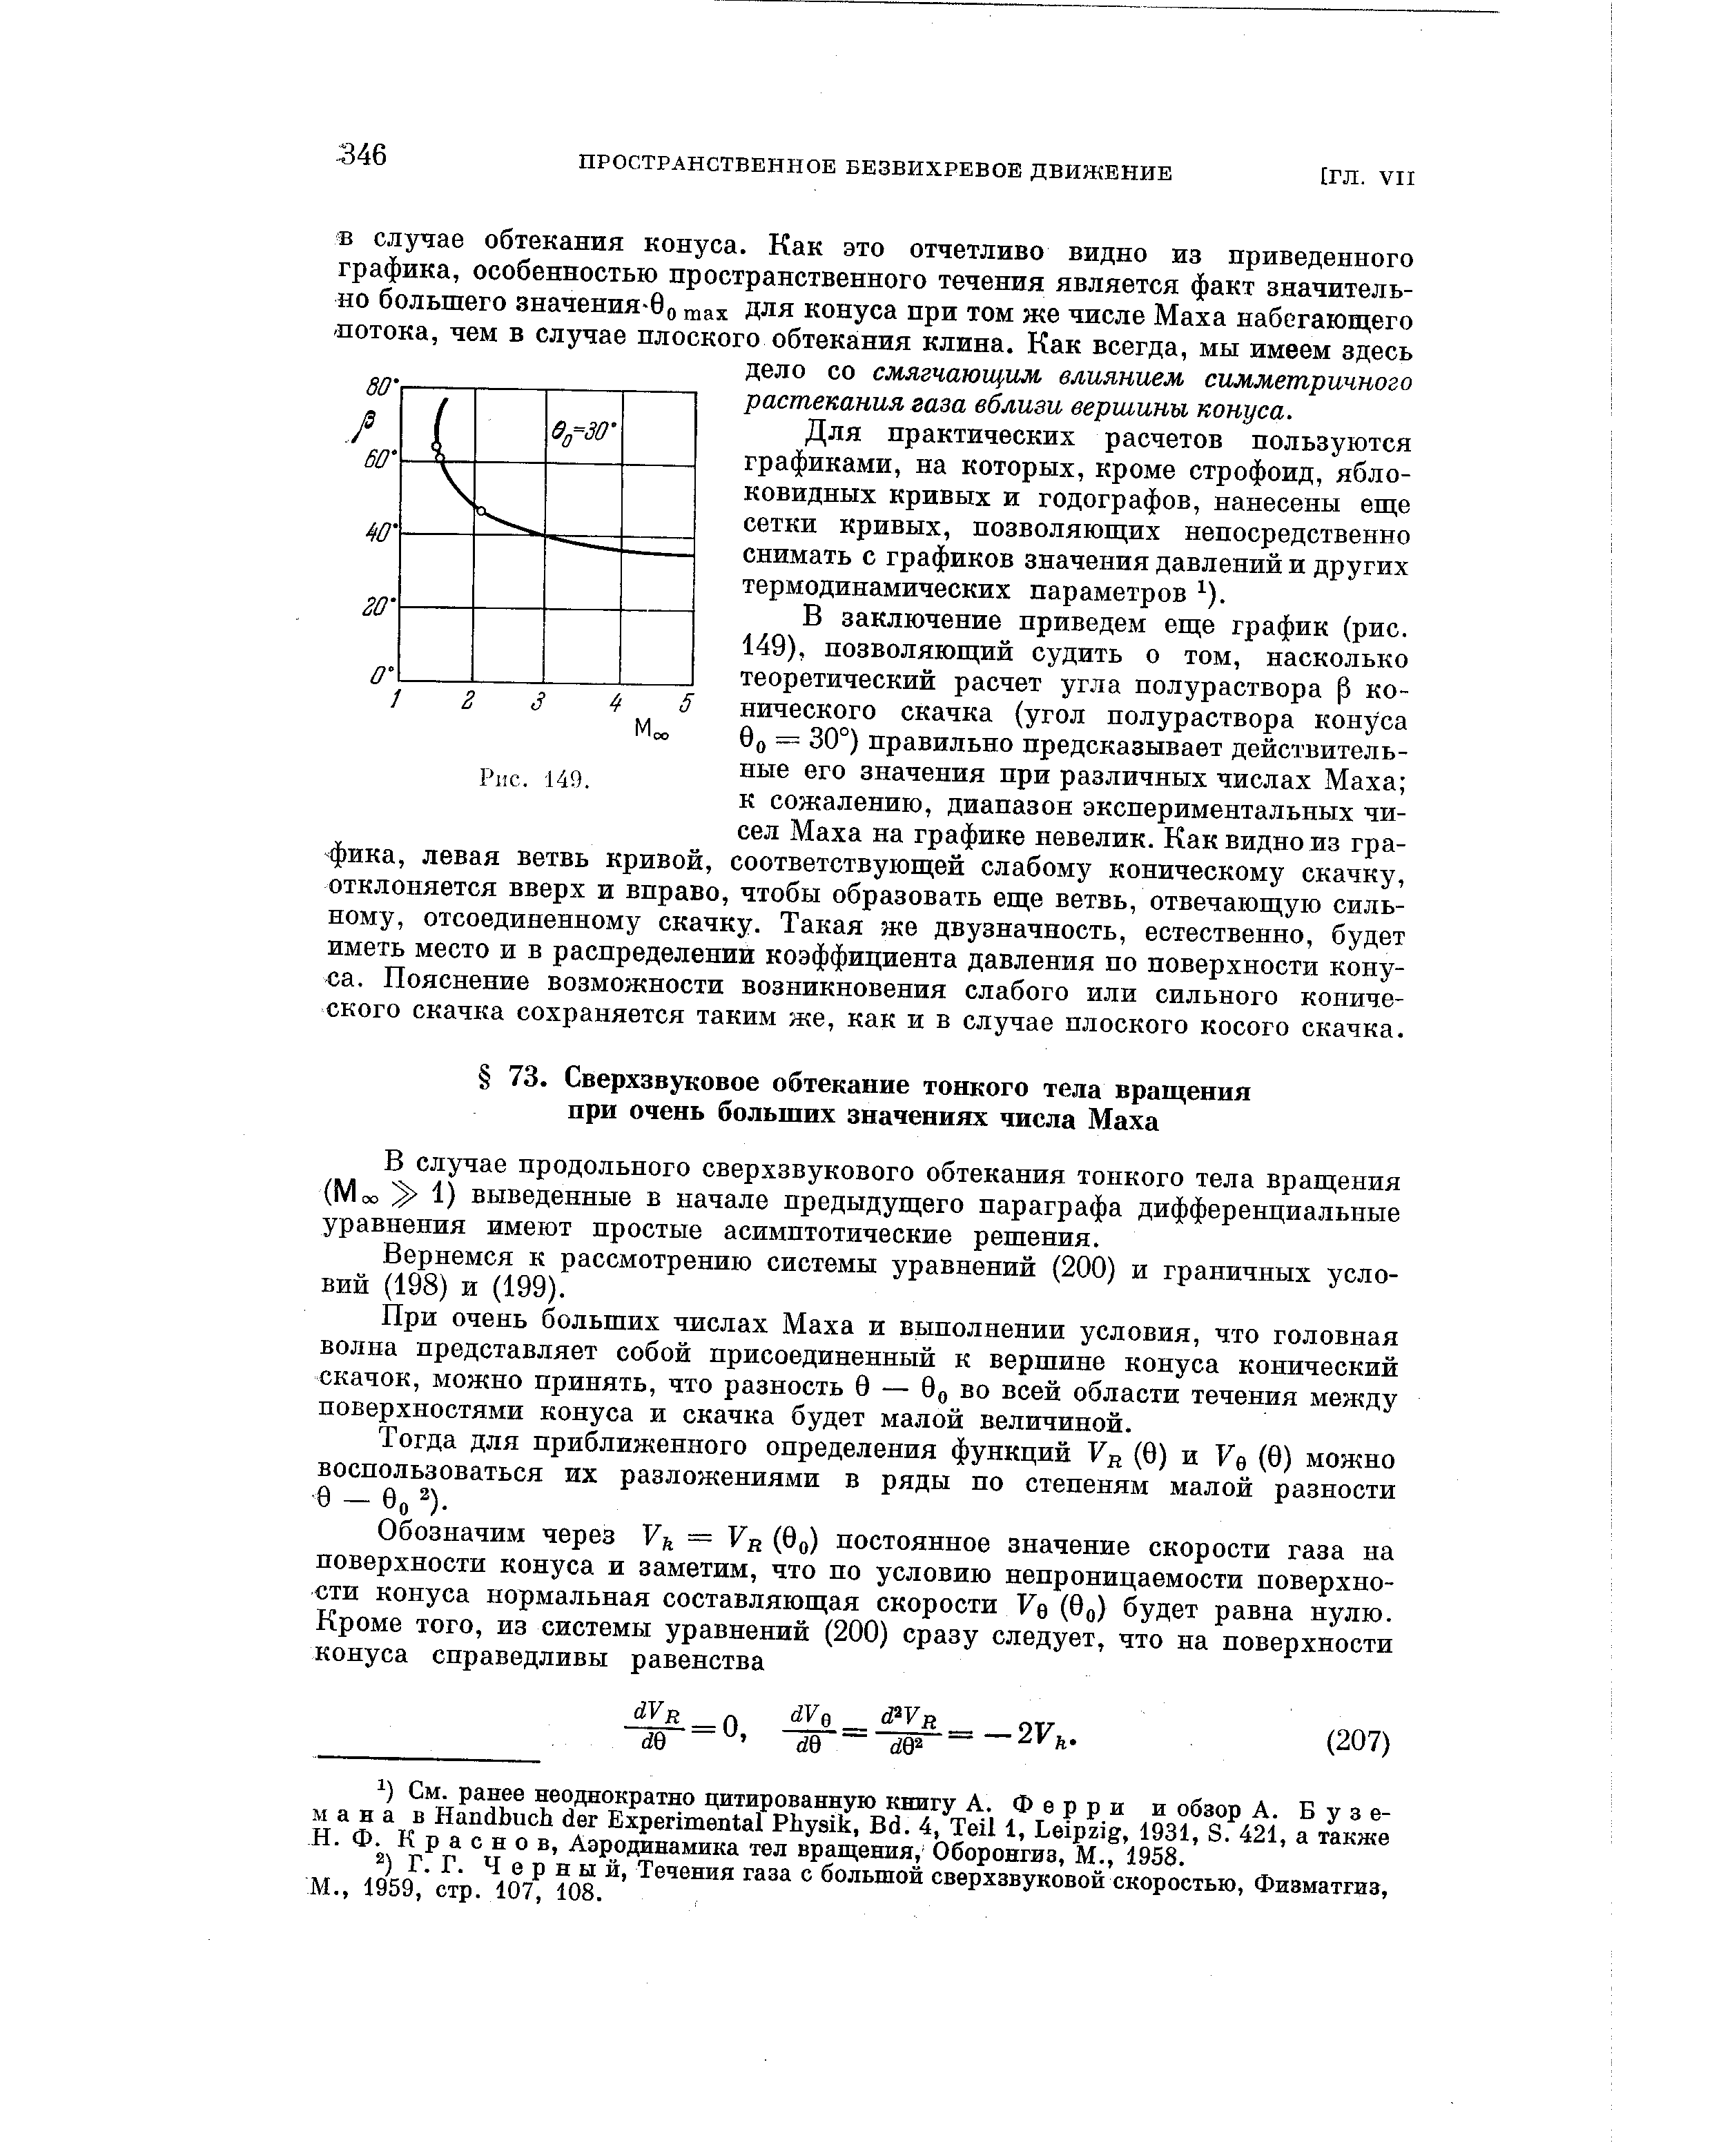 В случае продольного сверхзвукового обтекания тонкого тела вращения (Моо Э 1) выведенные в начале предыдущего параграфа дифференциальные уравнения имеют простые асимптотические решения.
